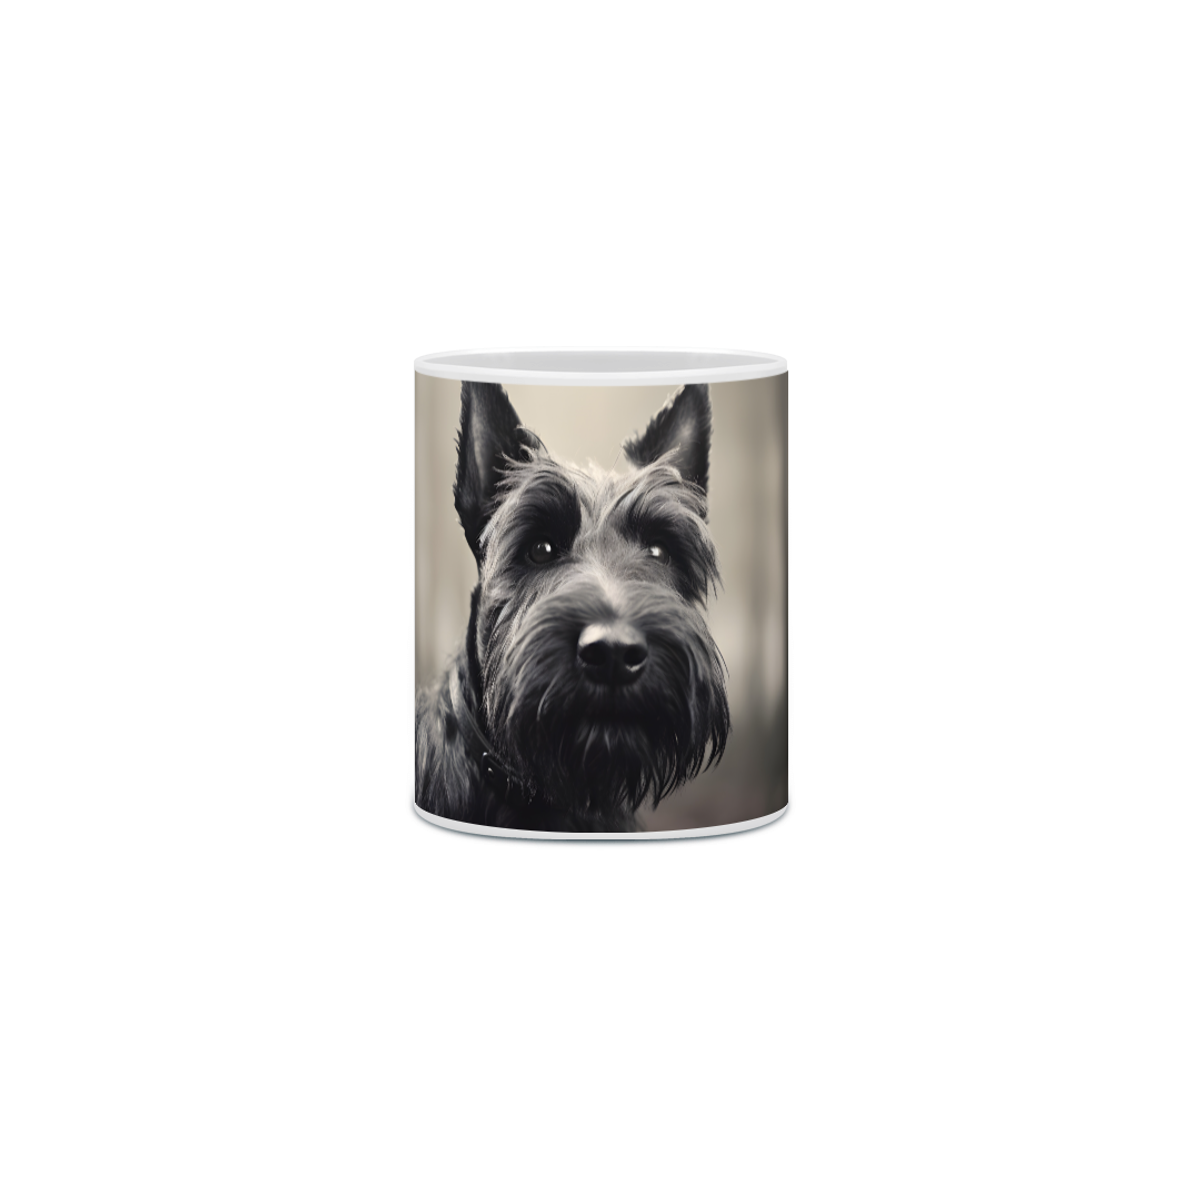 Nome do produto: Caneca Scottish Terrier com Arte Digital - #Autenticidade 0001